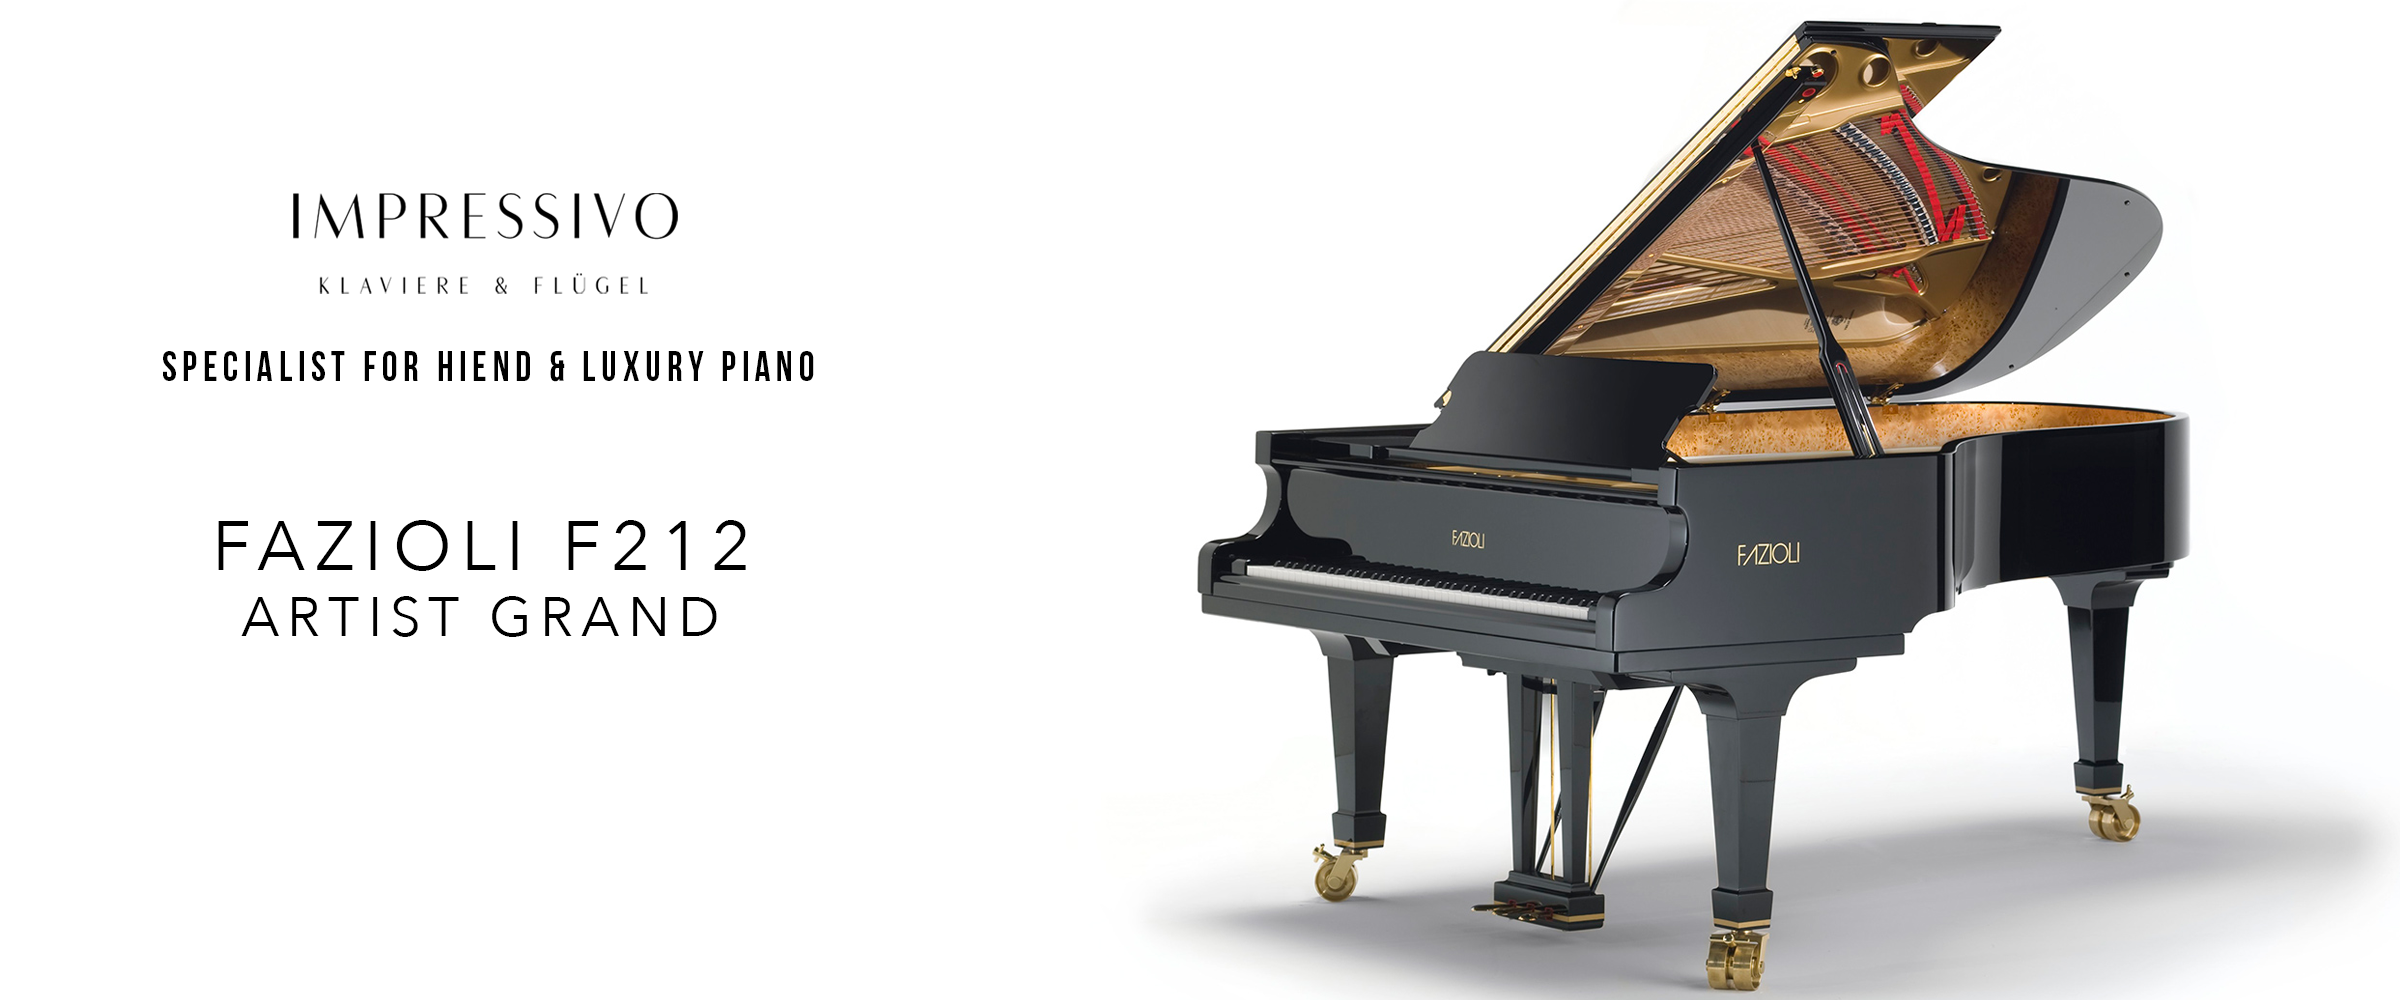 Fazioli F212 Grand piano